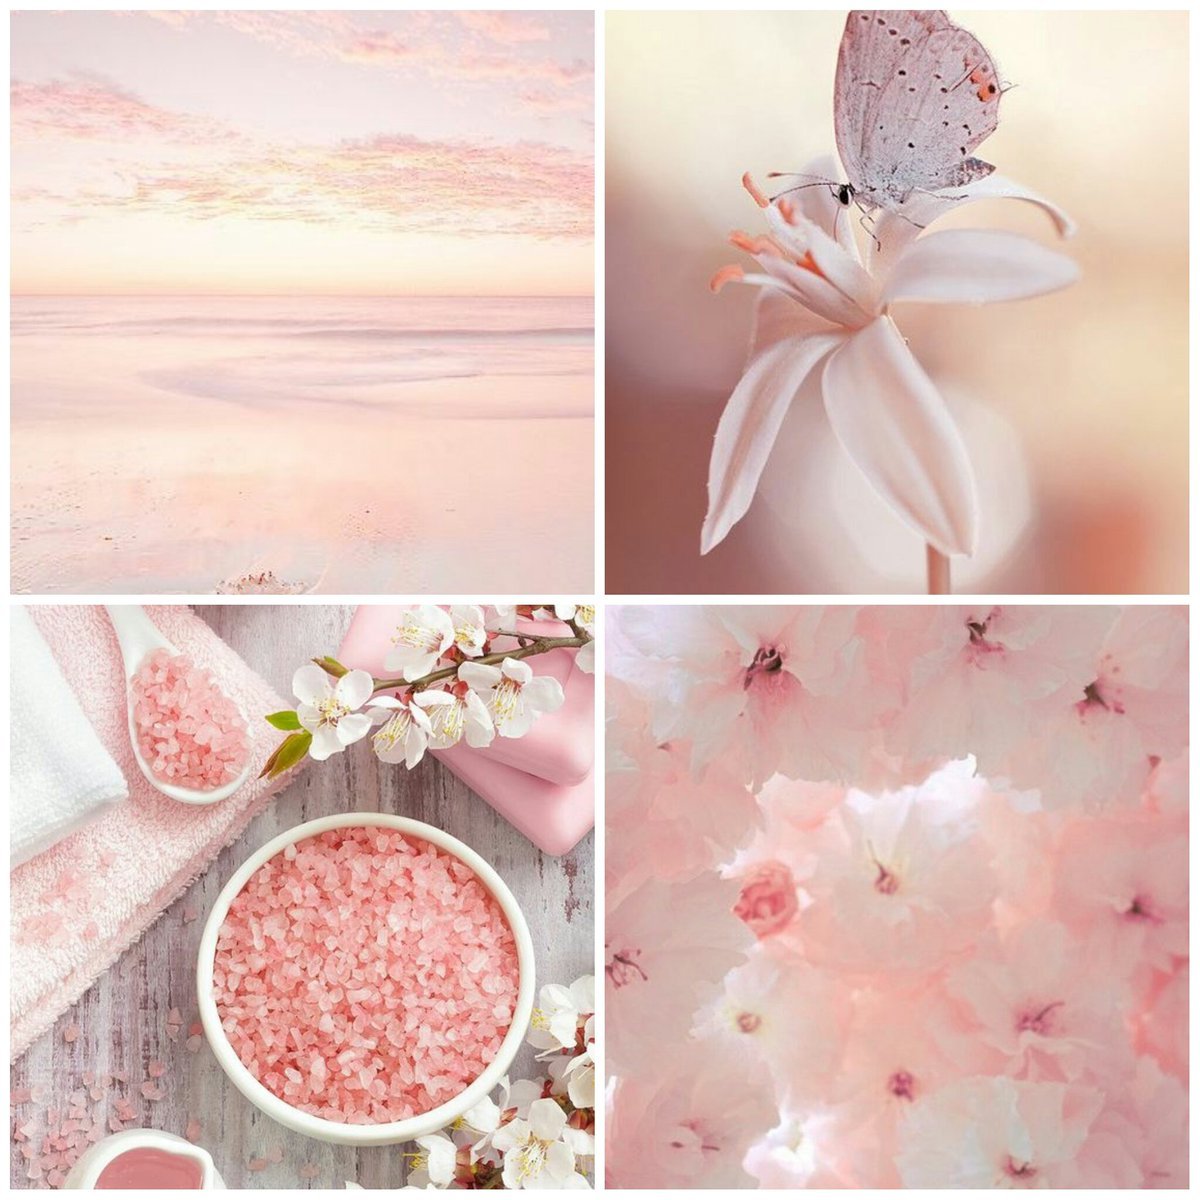 Розовые раскладки. Нежный цветок. Природа в пастельных тонах. Эстетика розового цвета. Нежный розовый цвет.